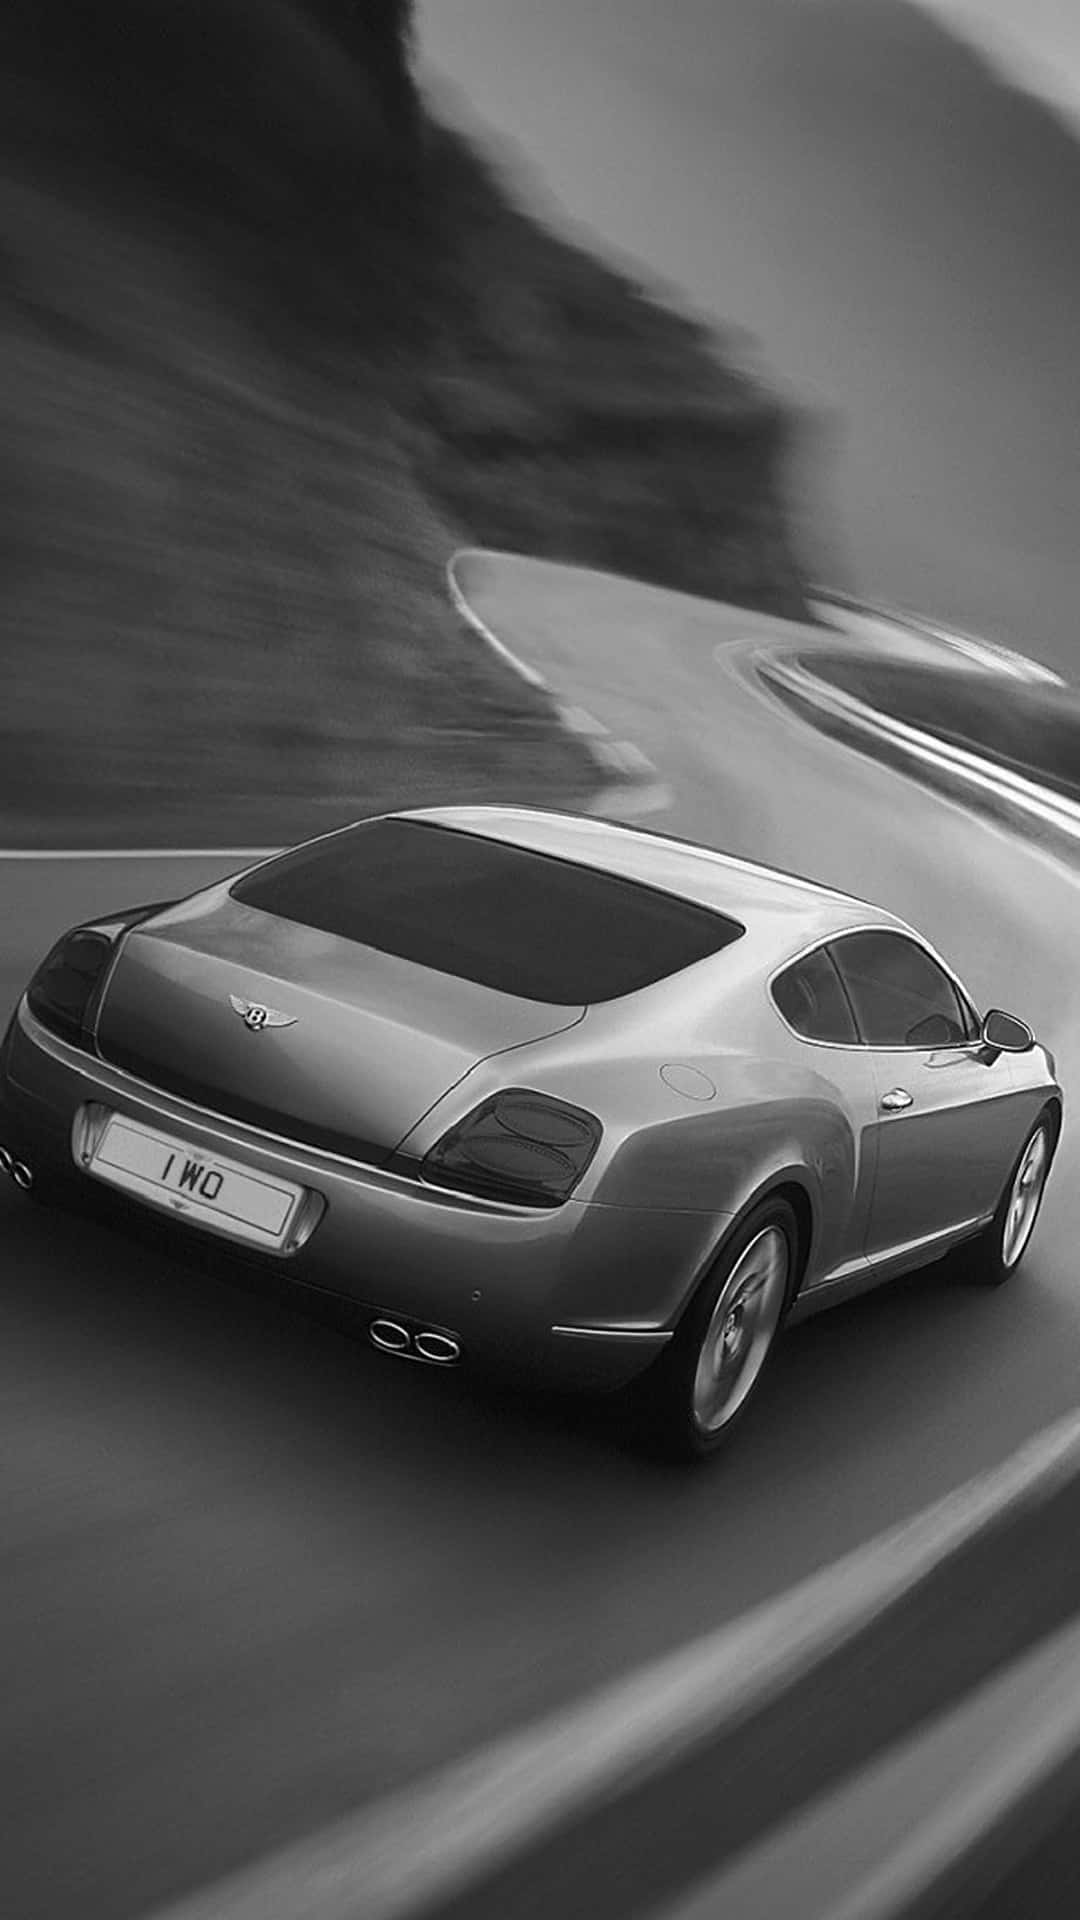 Schnelles2017er Modell Von Bentley Für Das Iphone Wallpaper